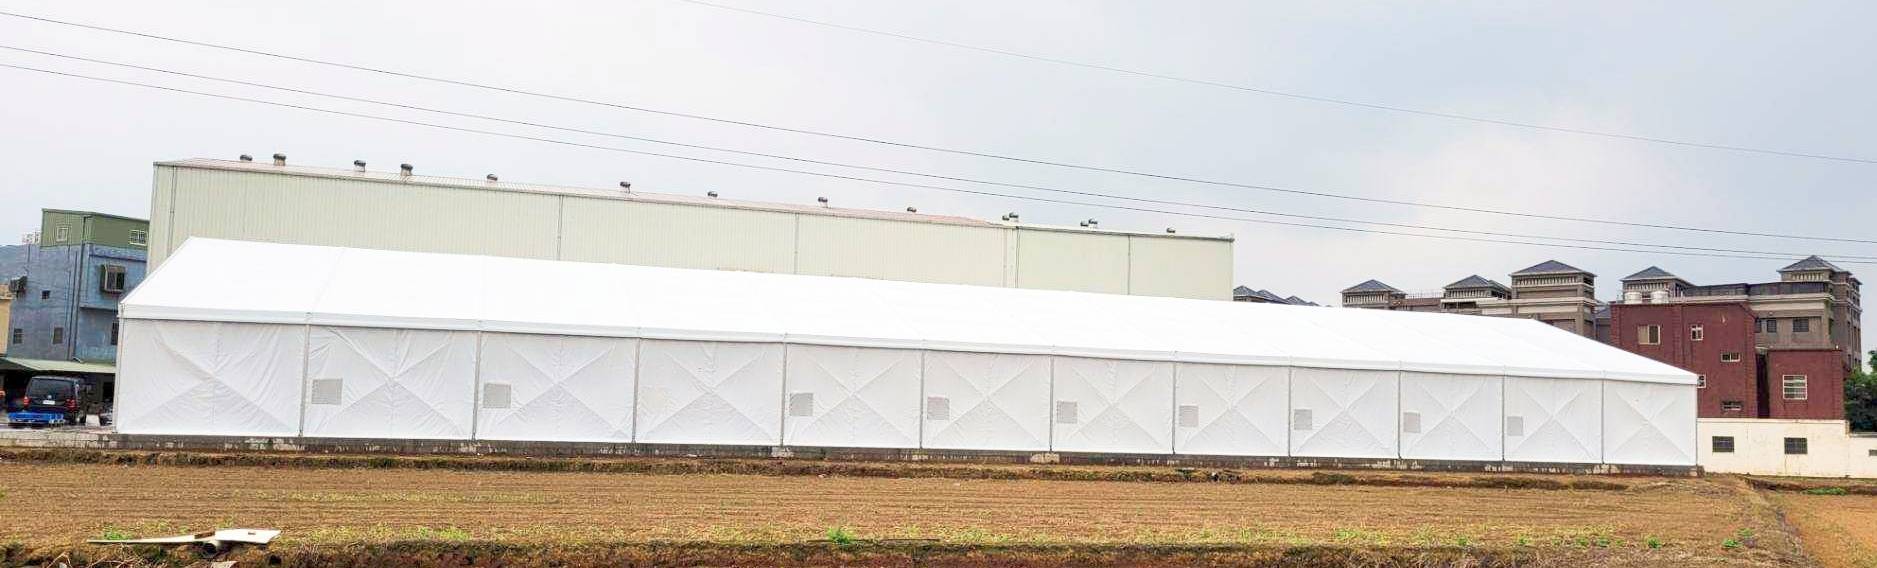 Структурные палатки - для больших складов